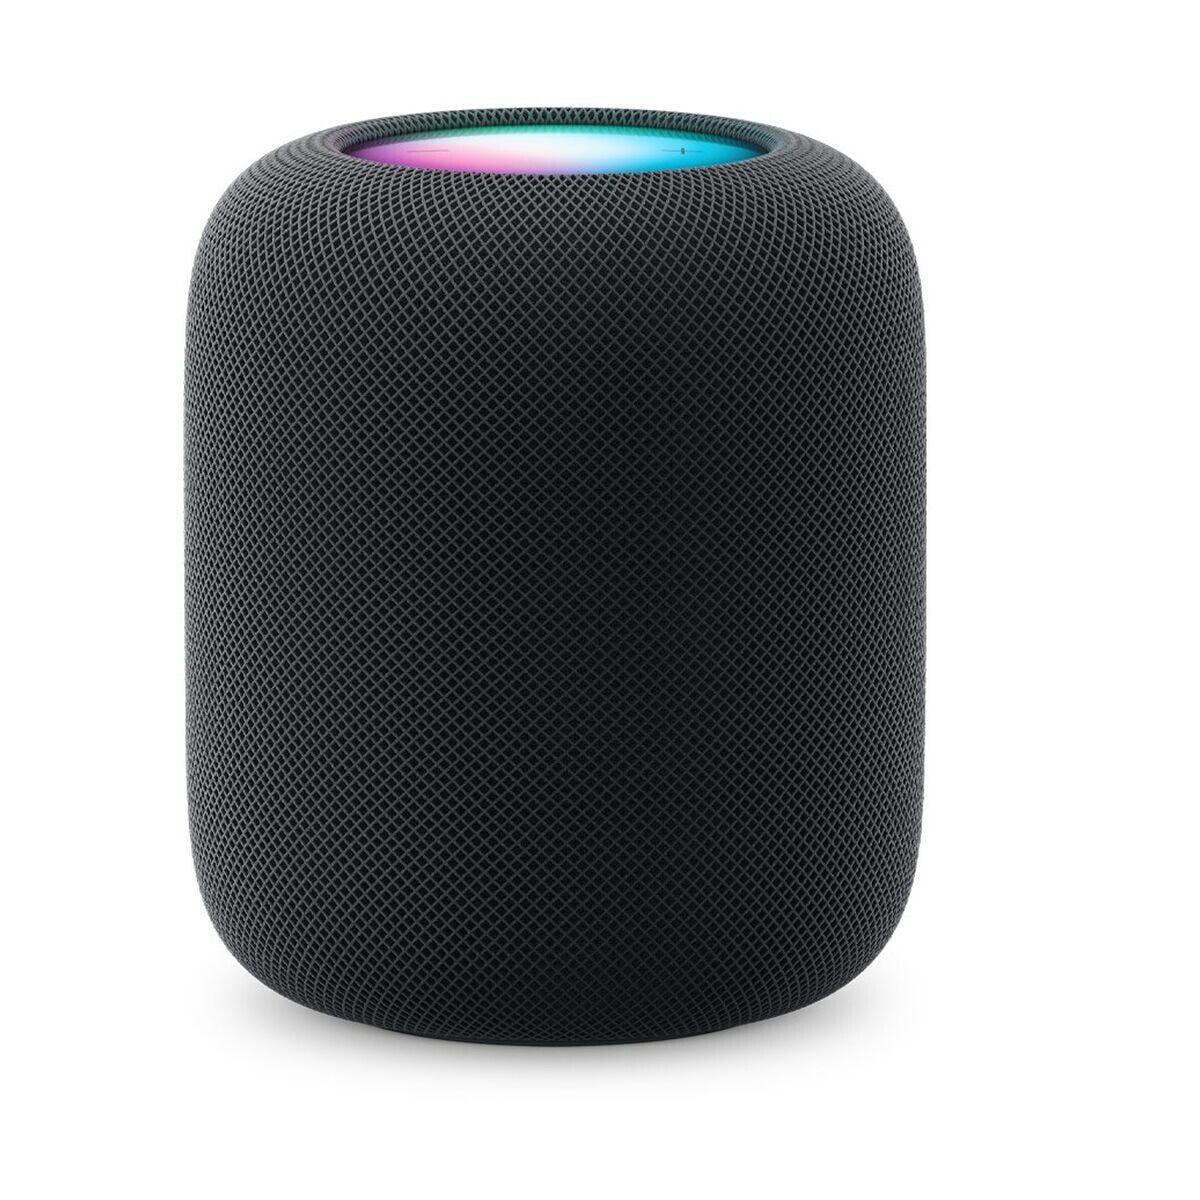 Portable Bluetooth Speakers Apple HomePod Black Multi